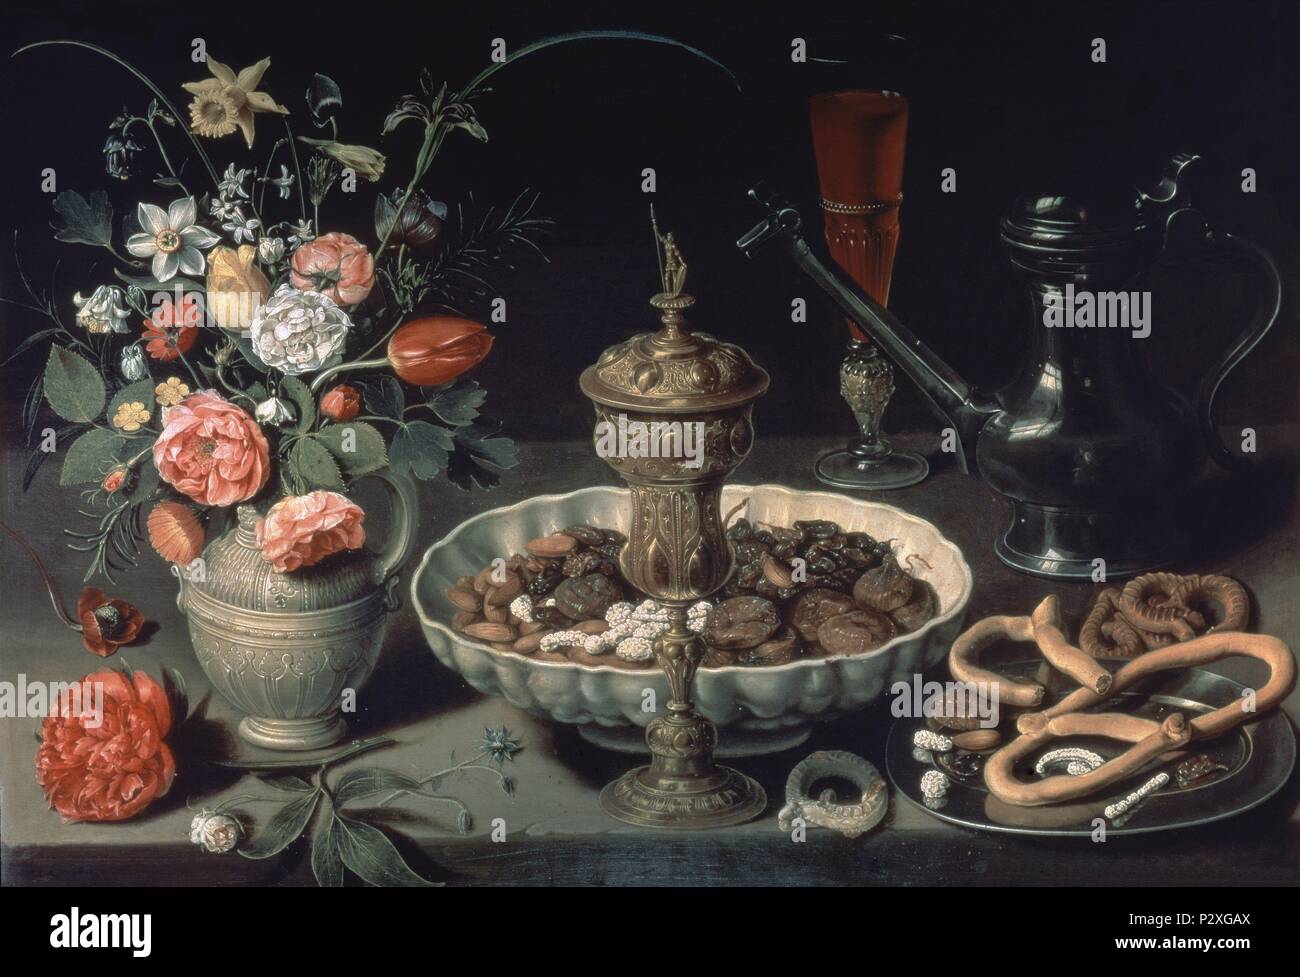 La vie encore de fleurs et de fruits secs - 1611 - 52x73 cm - huile sur panneau - école flamande - NP 1620. Author : Clara Peeters (1594-c. 1657). Emplacement : Museo del Prado-PINTURA, MADRID, ESPAGNE. Aussi connu sous : MESA ; BODEGON ; BODEGON CON UVAS, CARDO, FRANCOLIN Y LIRIOS ; NATURE MORTE AVEC TOURTE, POULETS ROTIS ET OLIVES ; BODEGON DE HORTALIZA S (ZANAHORIAS, CARDO, NARANJA, LIMON... ). Banque D'Images